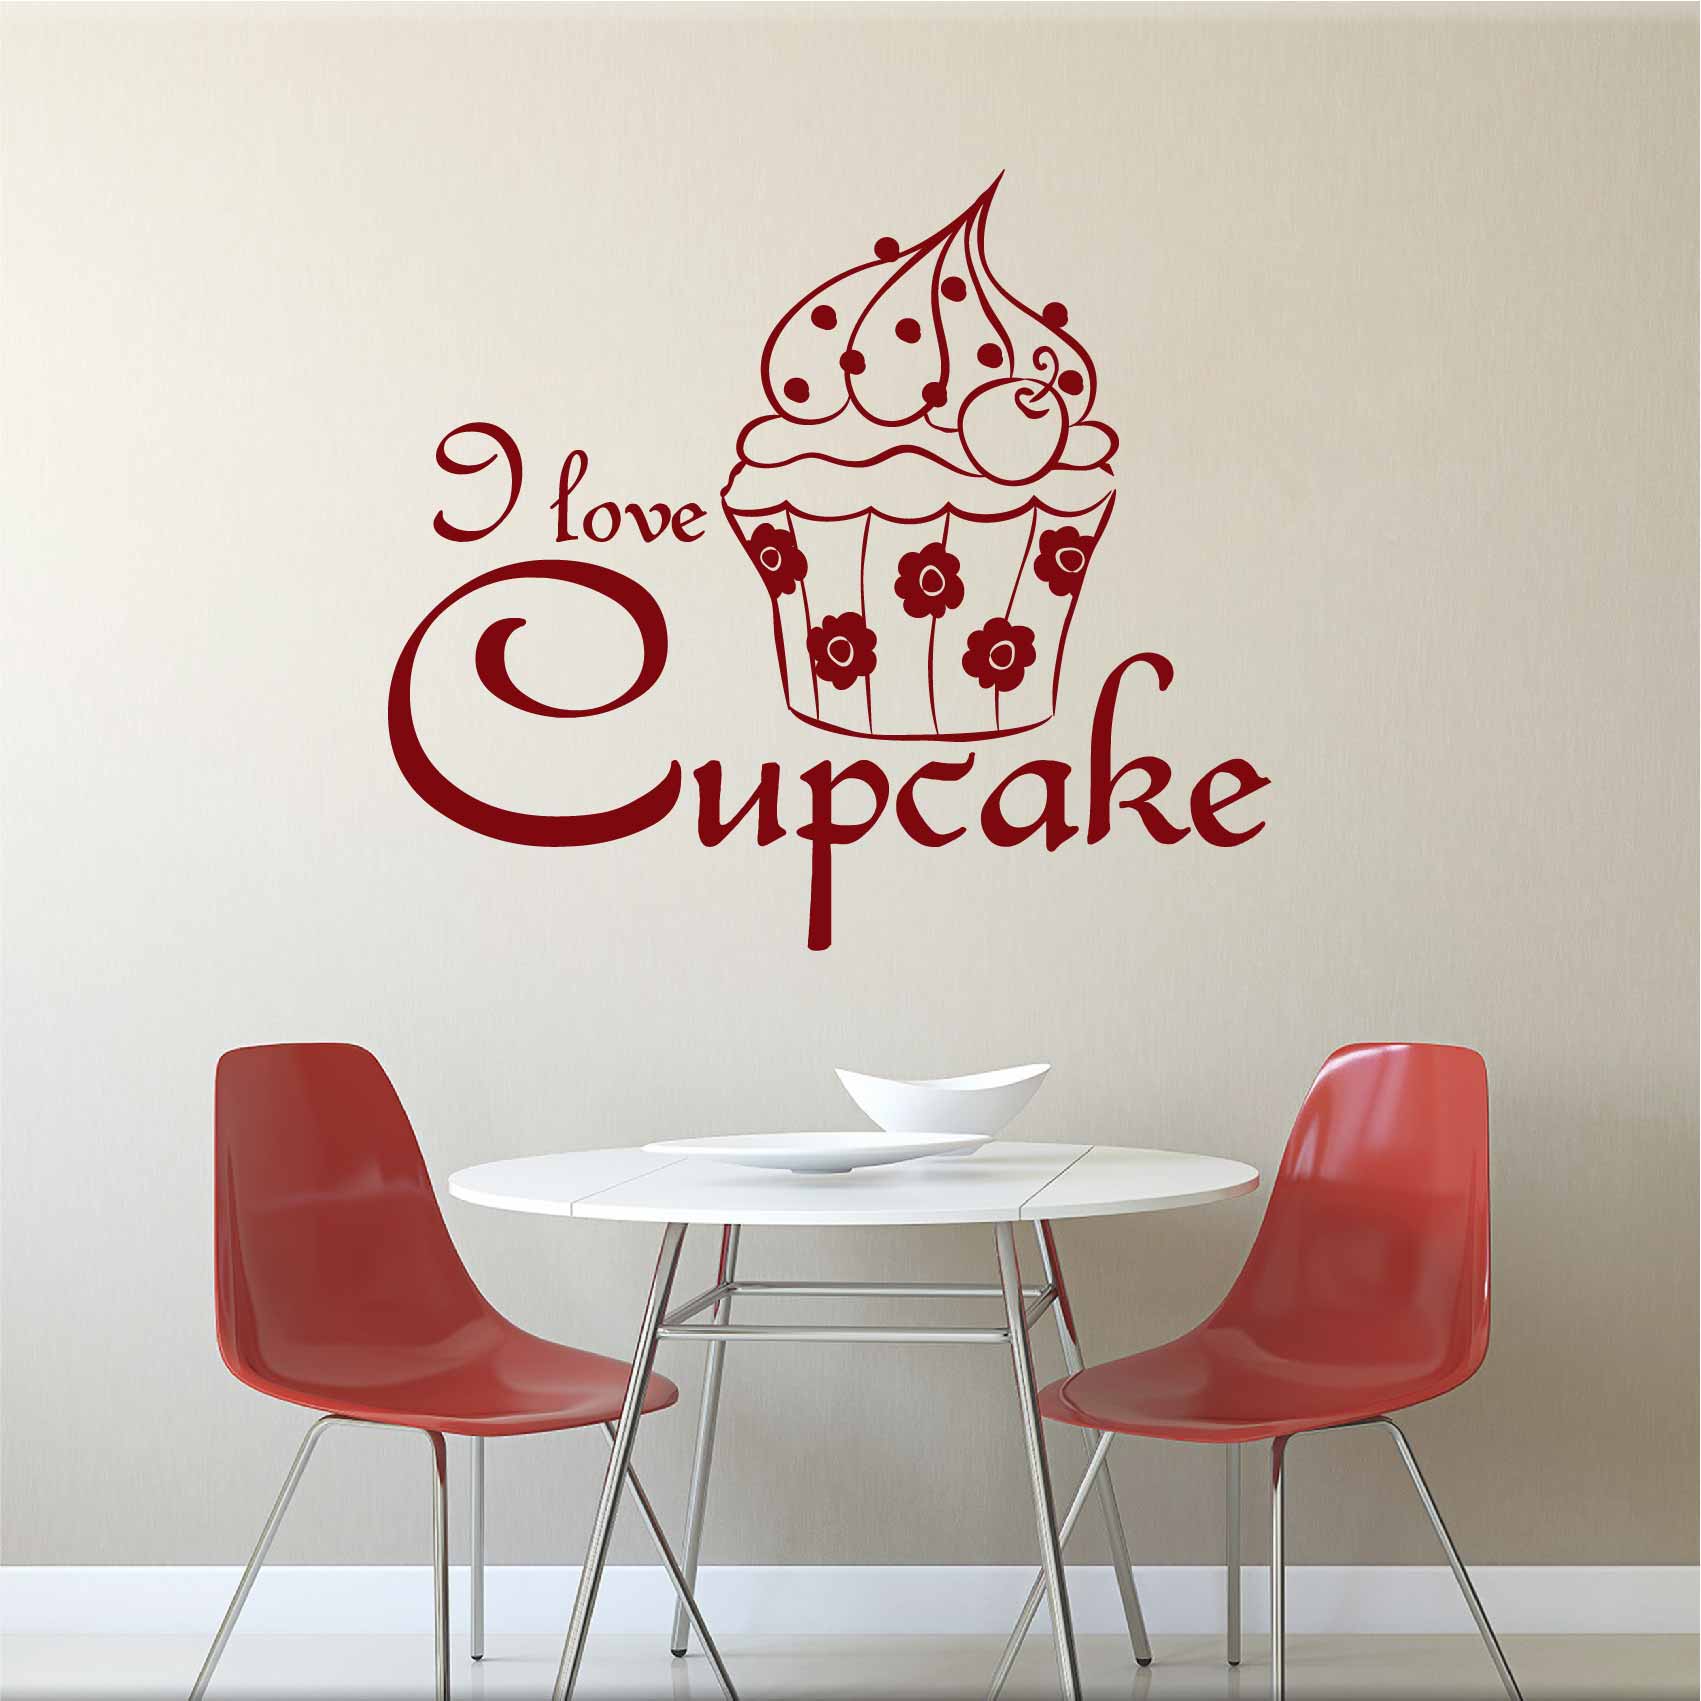 stickers-i-love-cupcake-ref12cupcake-autocollant-muraux-cuisine-salle-a-manger-salon-sticker-mural-deco-gateau-cupcakes-gateaux